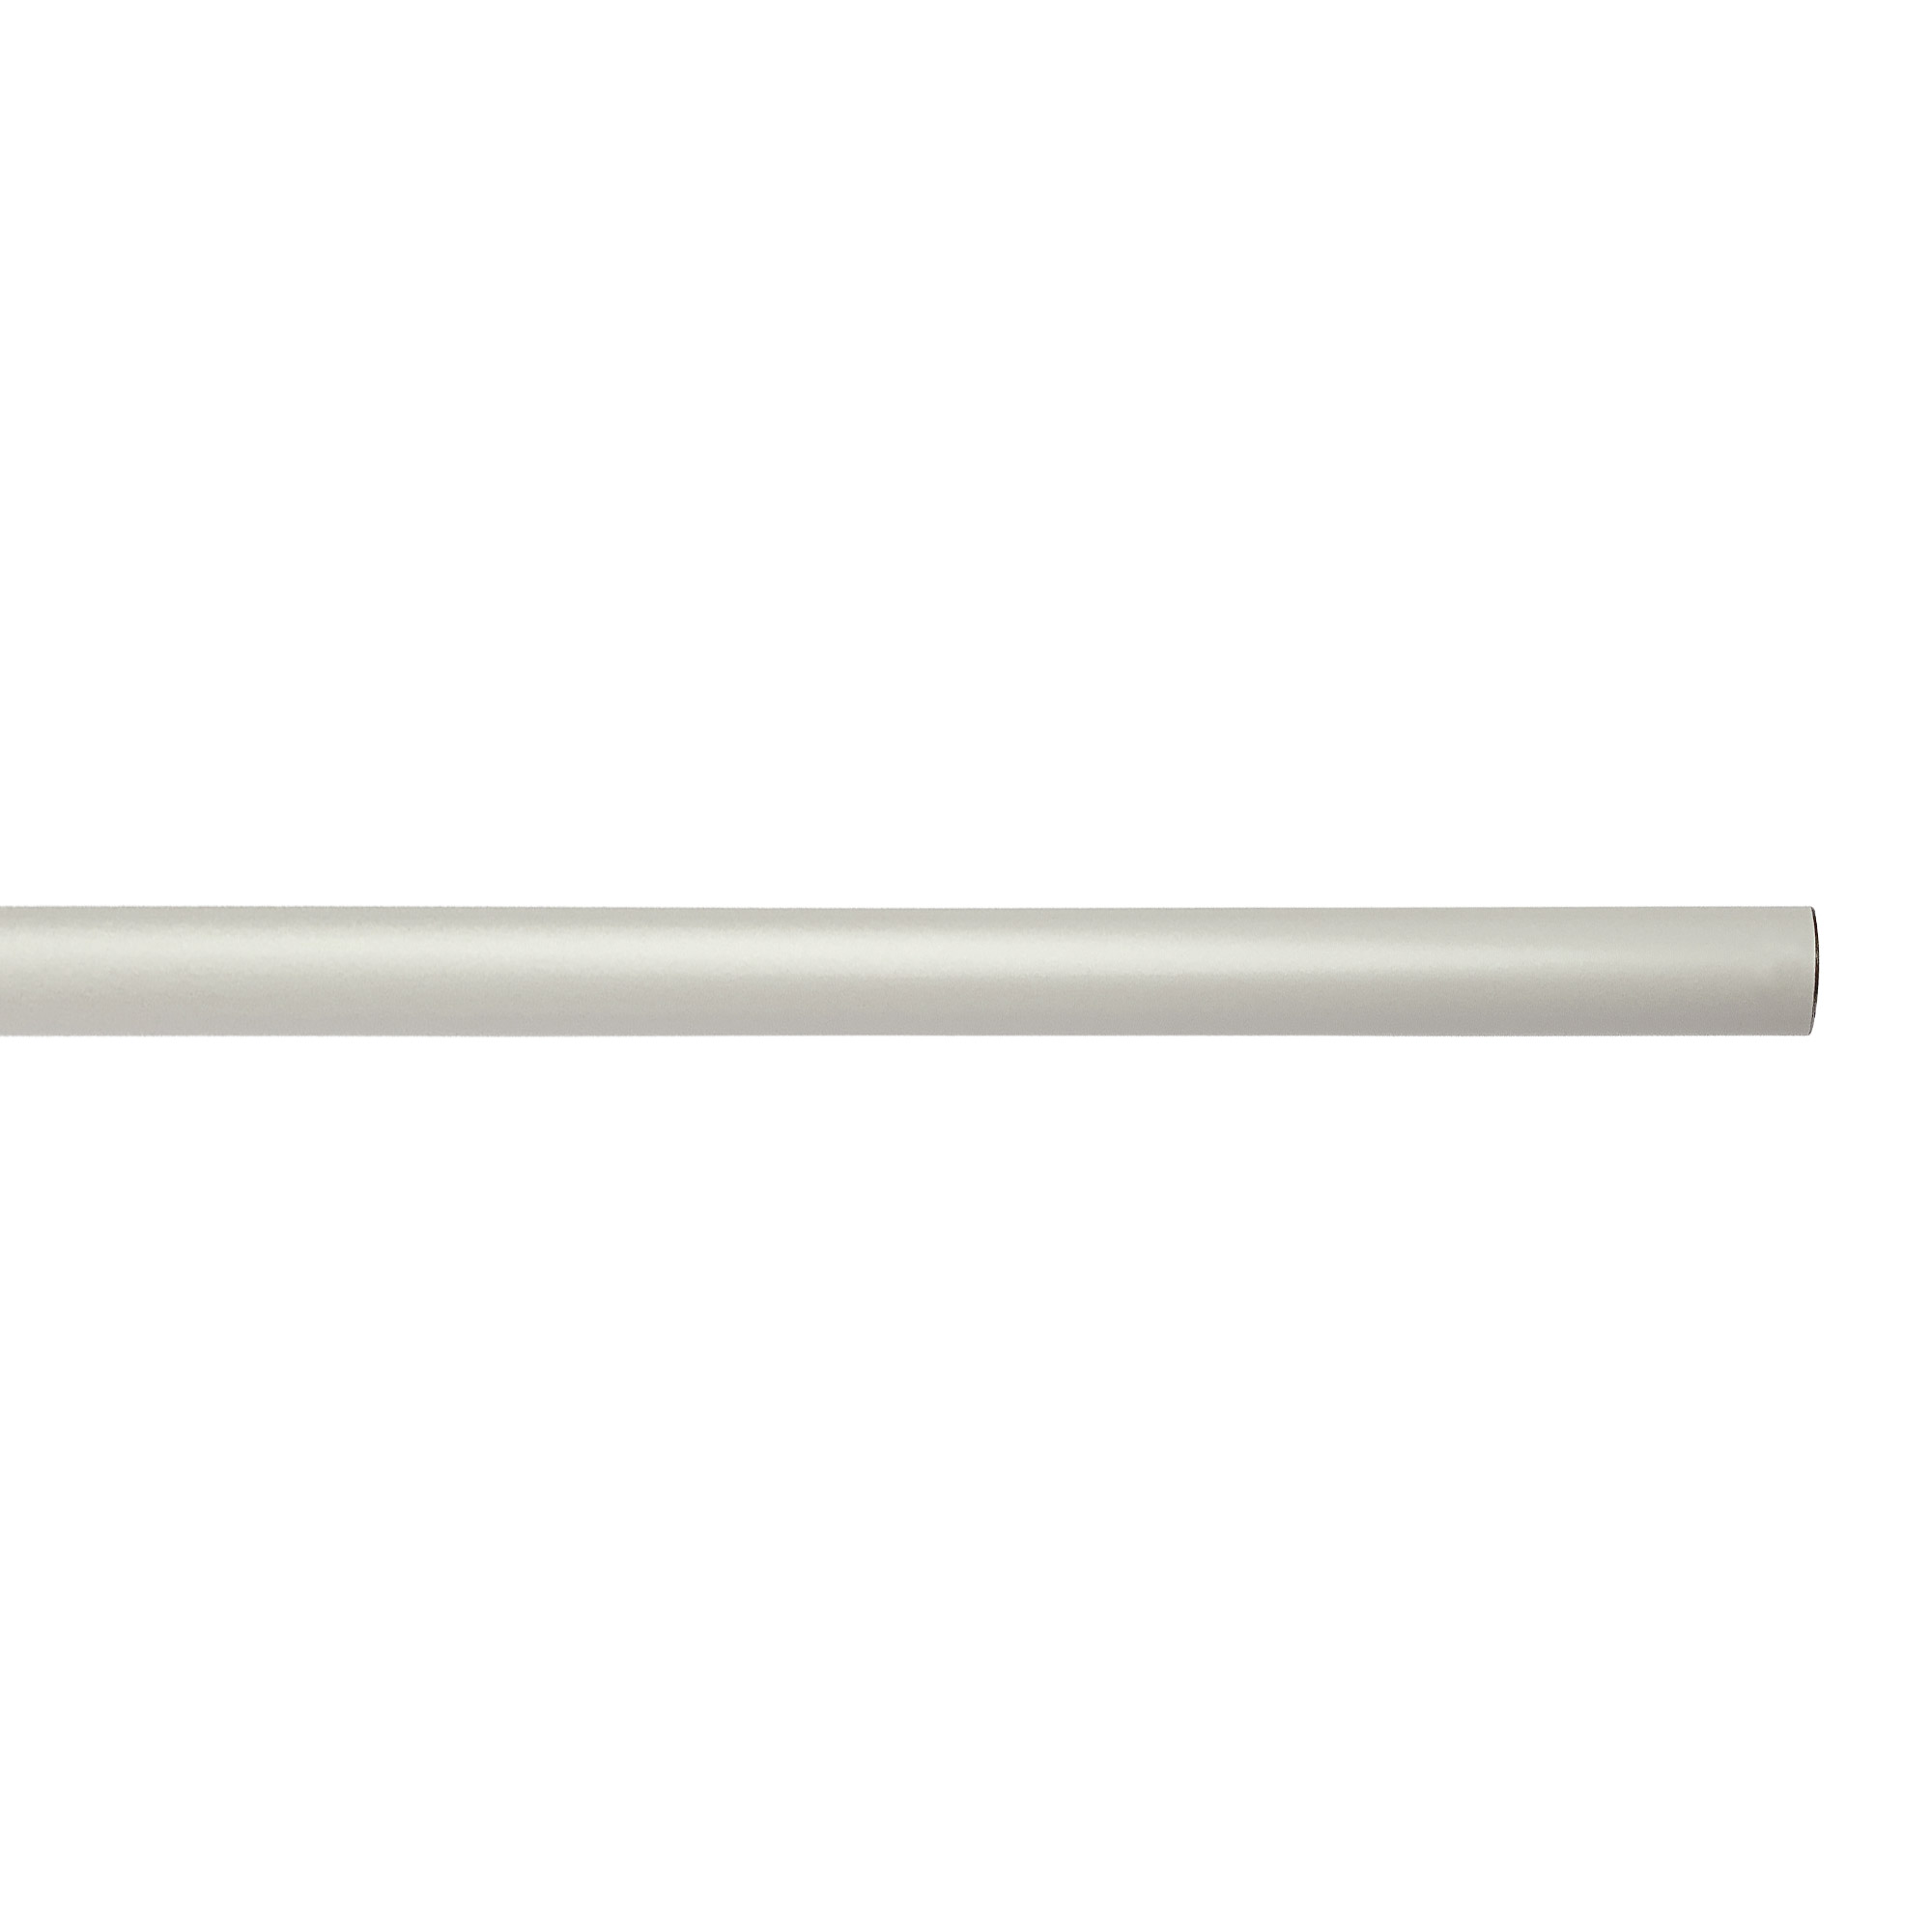 アイアンハンガーパイプ F型-天井吊タイプ H500 ホワイト PS-HB008-74-G141 水平パイプは3サイズから2本、それぞれお好きな長さを選択可能です